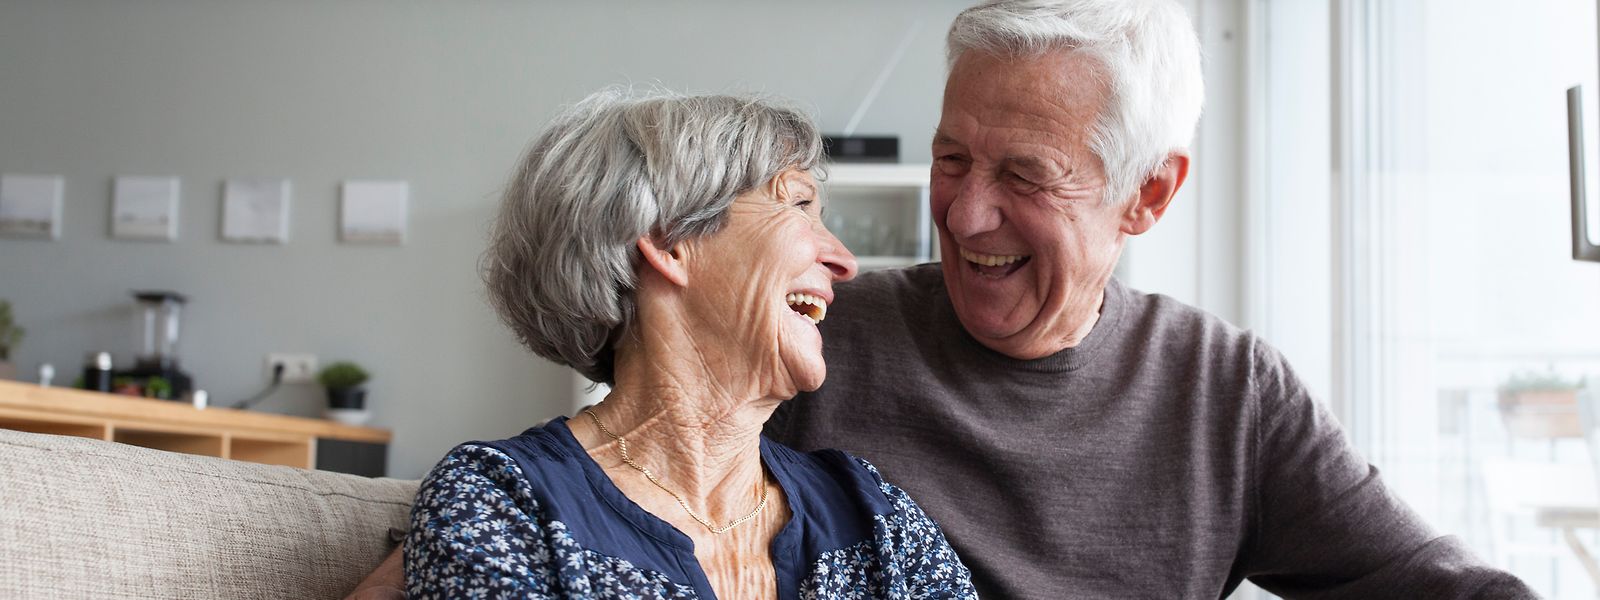 Der internationale Vergleich zeigt: Menschen im Ruhestand haben in Luxemburg besonders gut lachen.